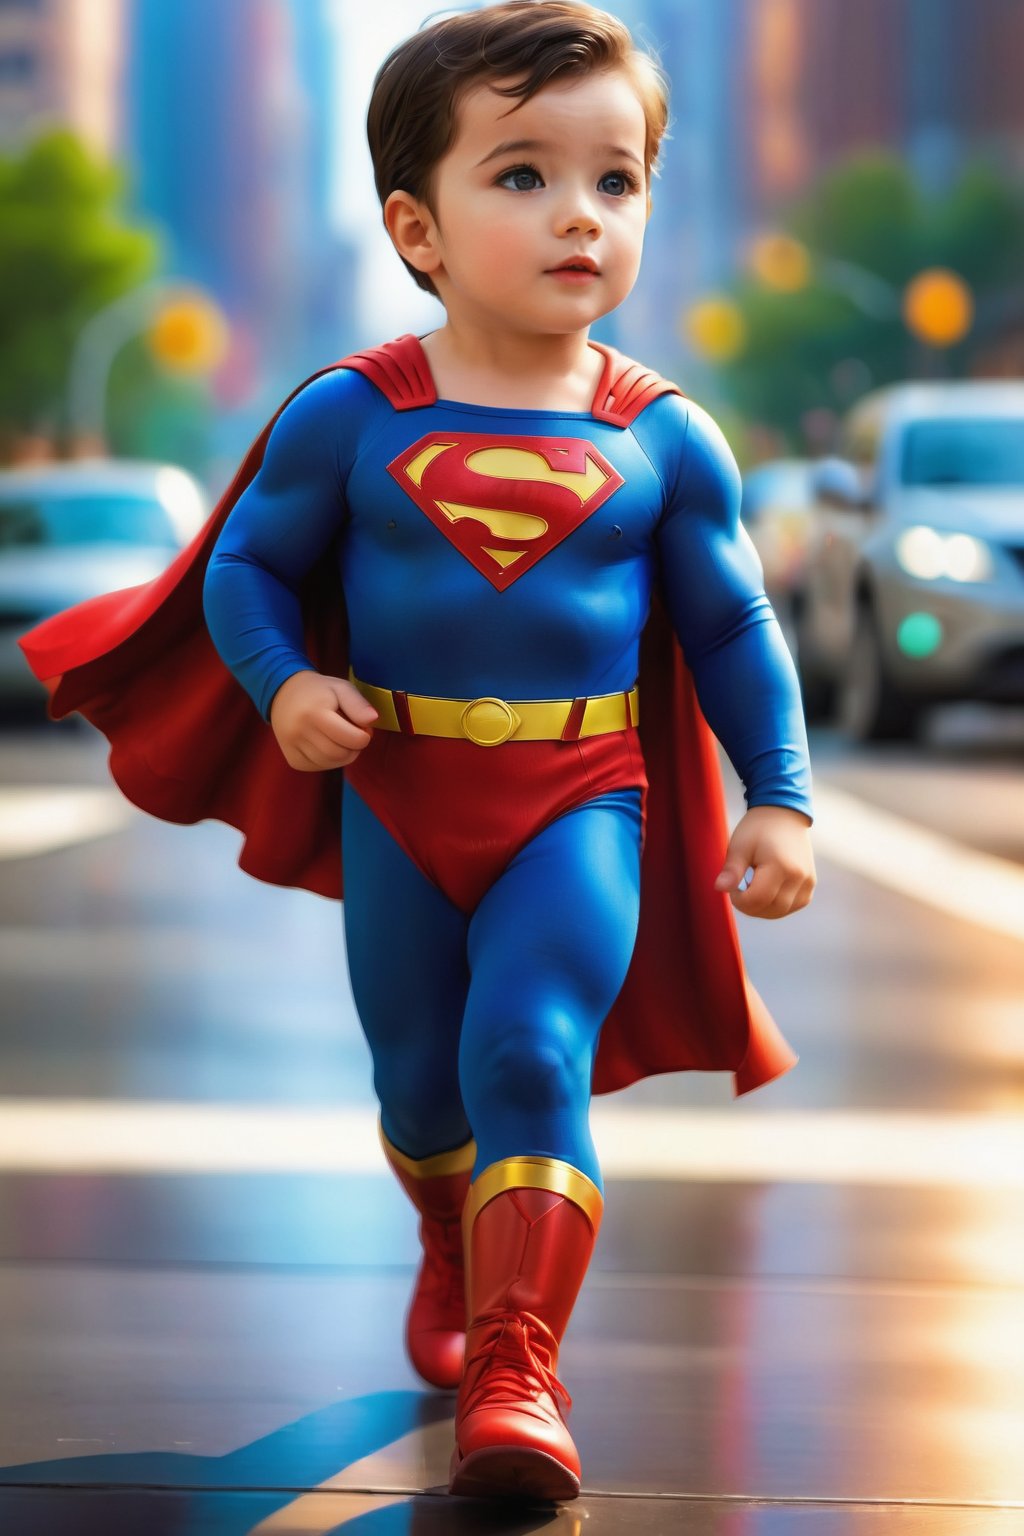 Kid Superman, cartoon looks,ultra hd,ultra realistic 